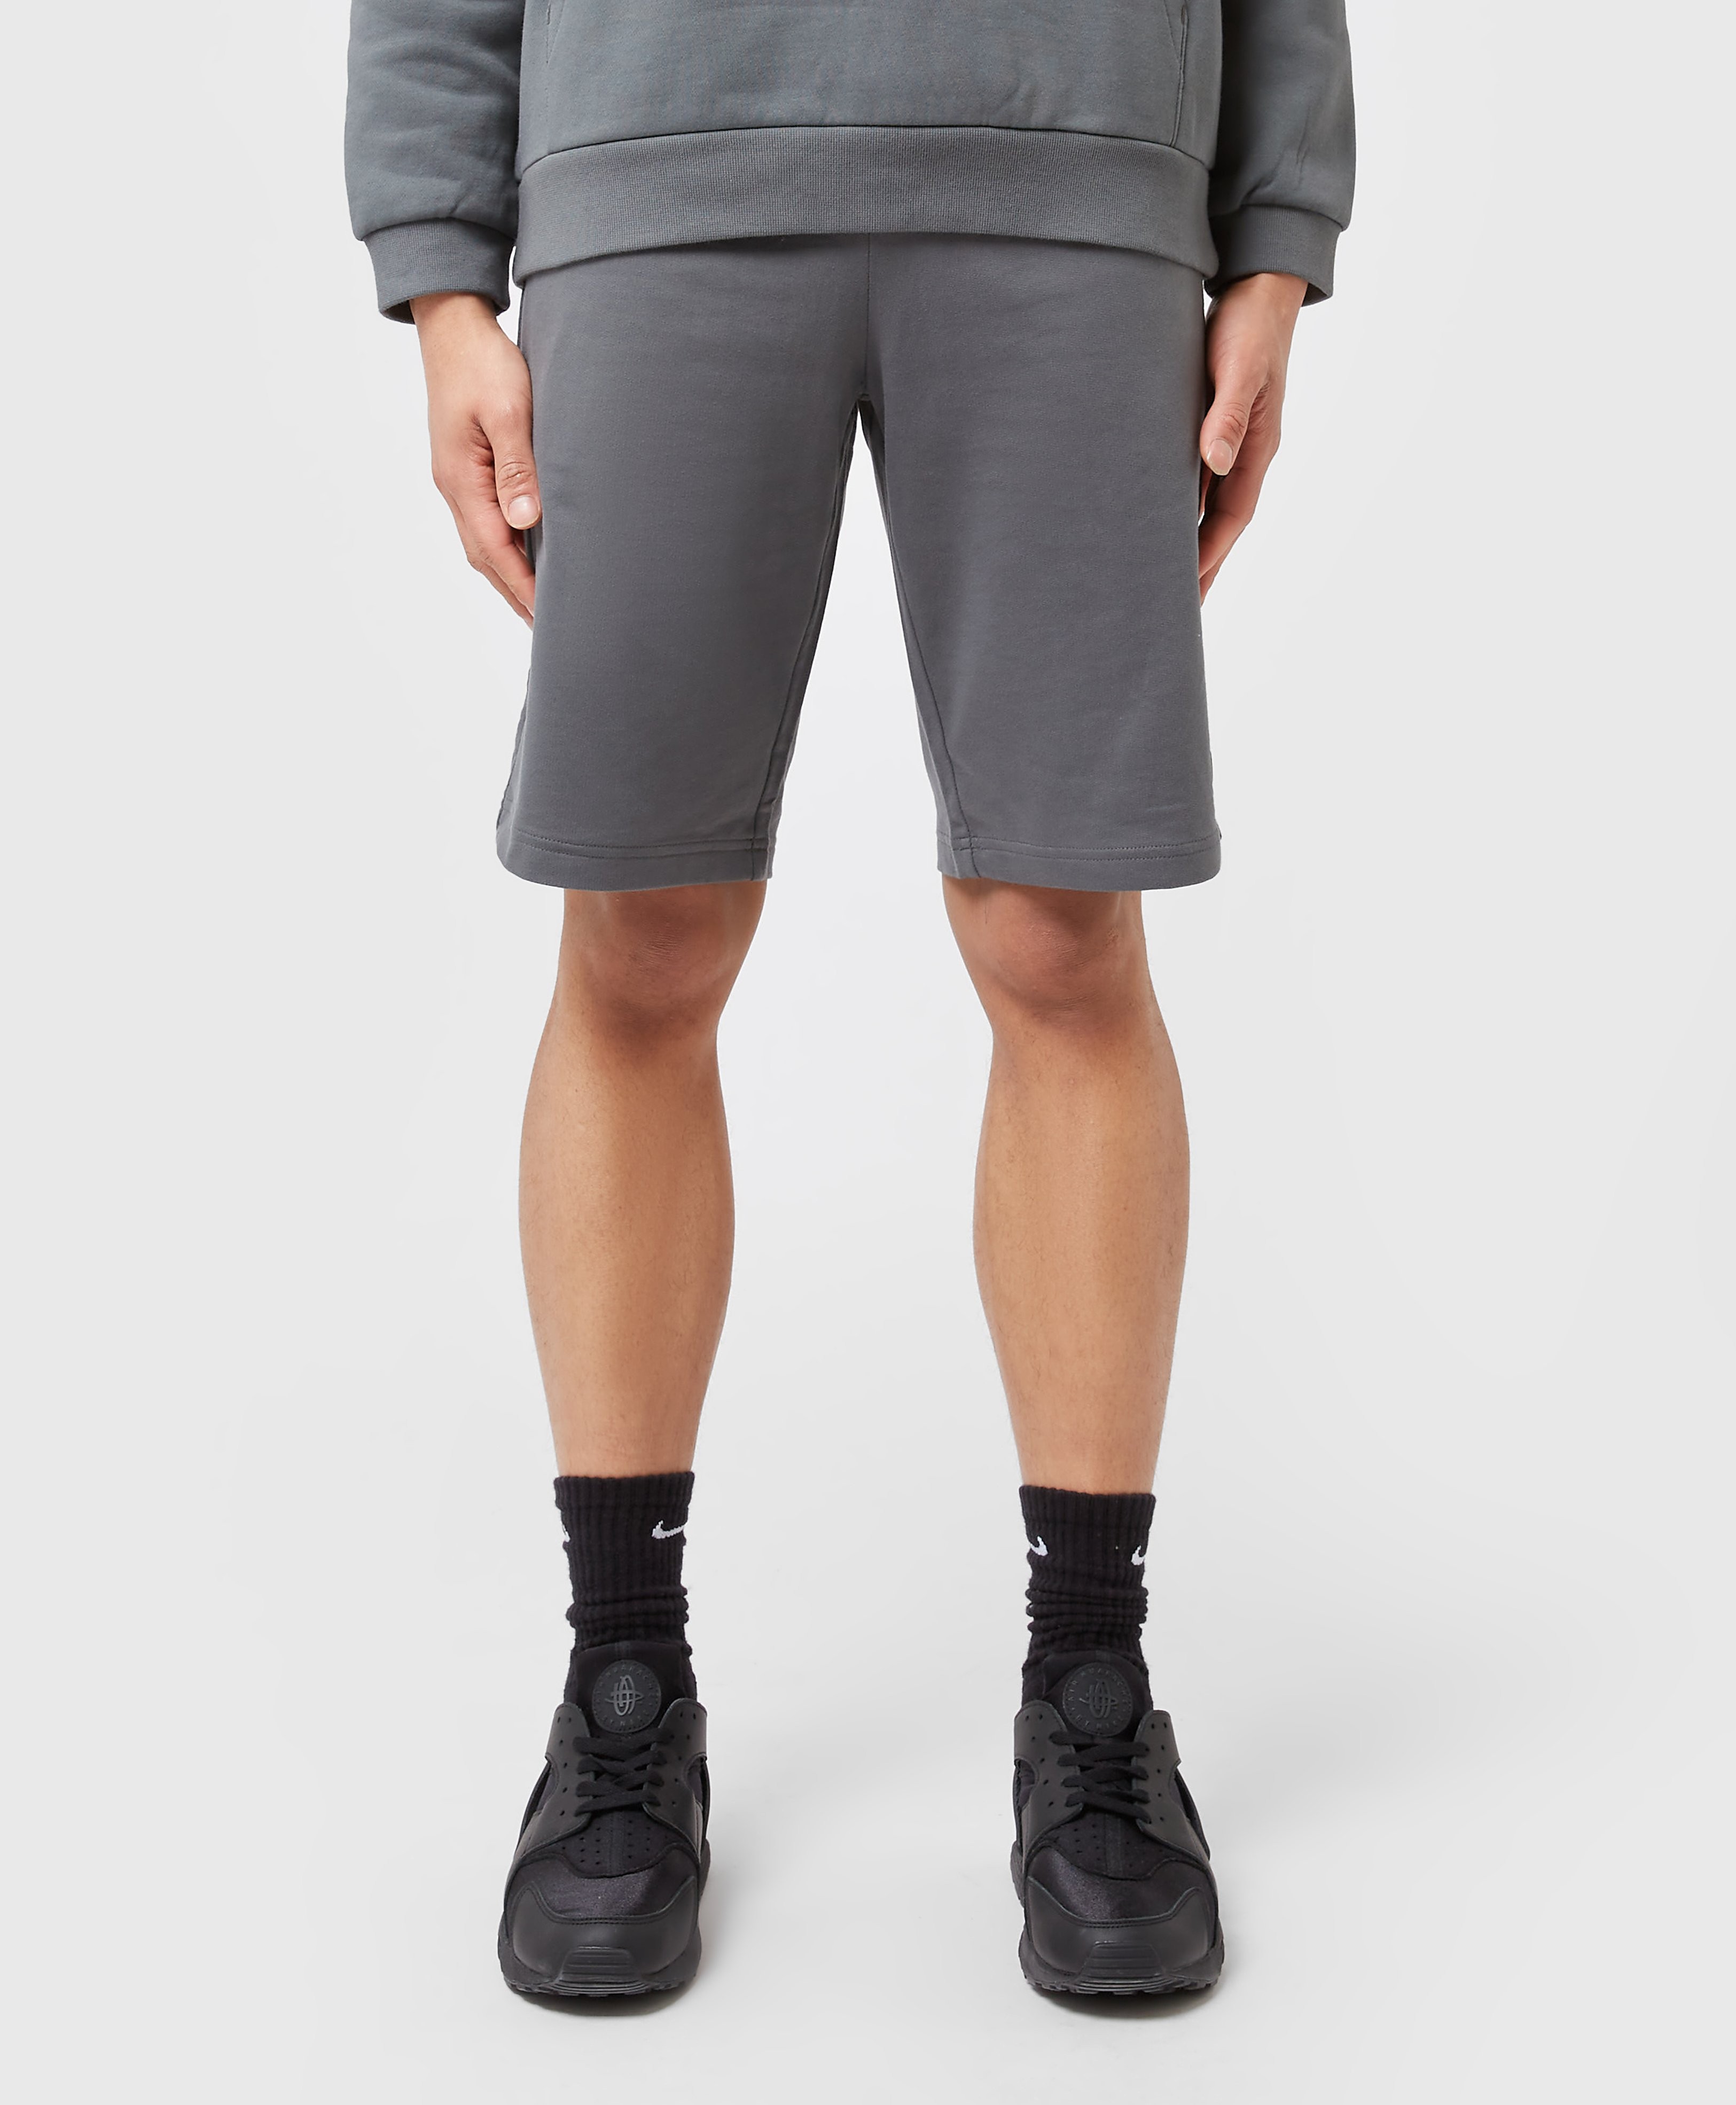 Men's Emporio Armani EA7 Core Shorts - Grey, Grey